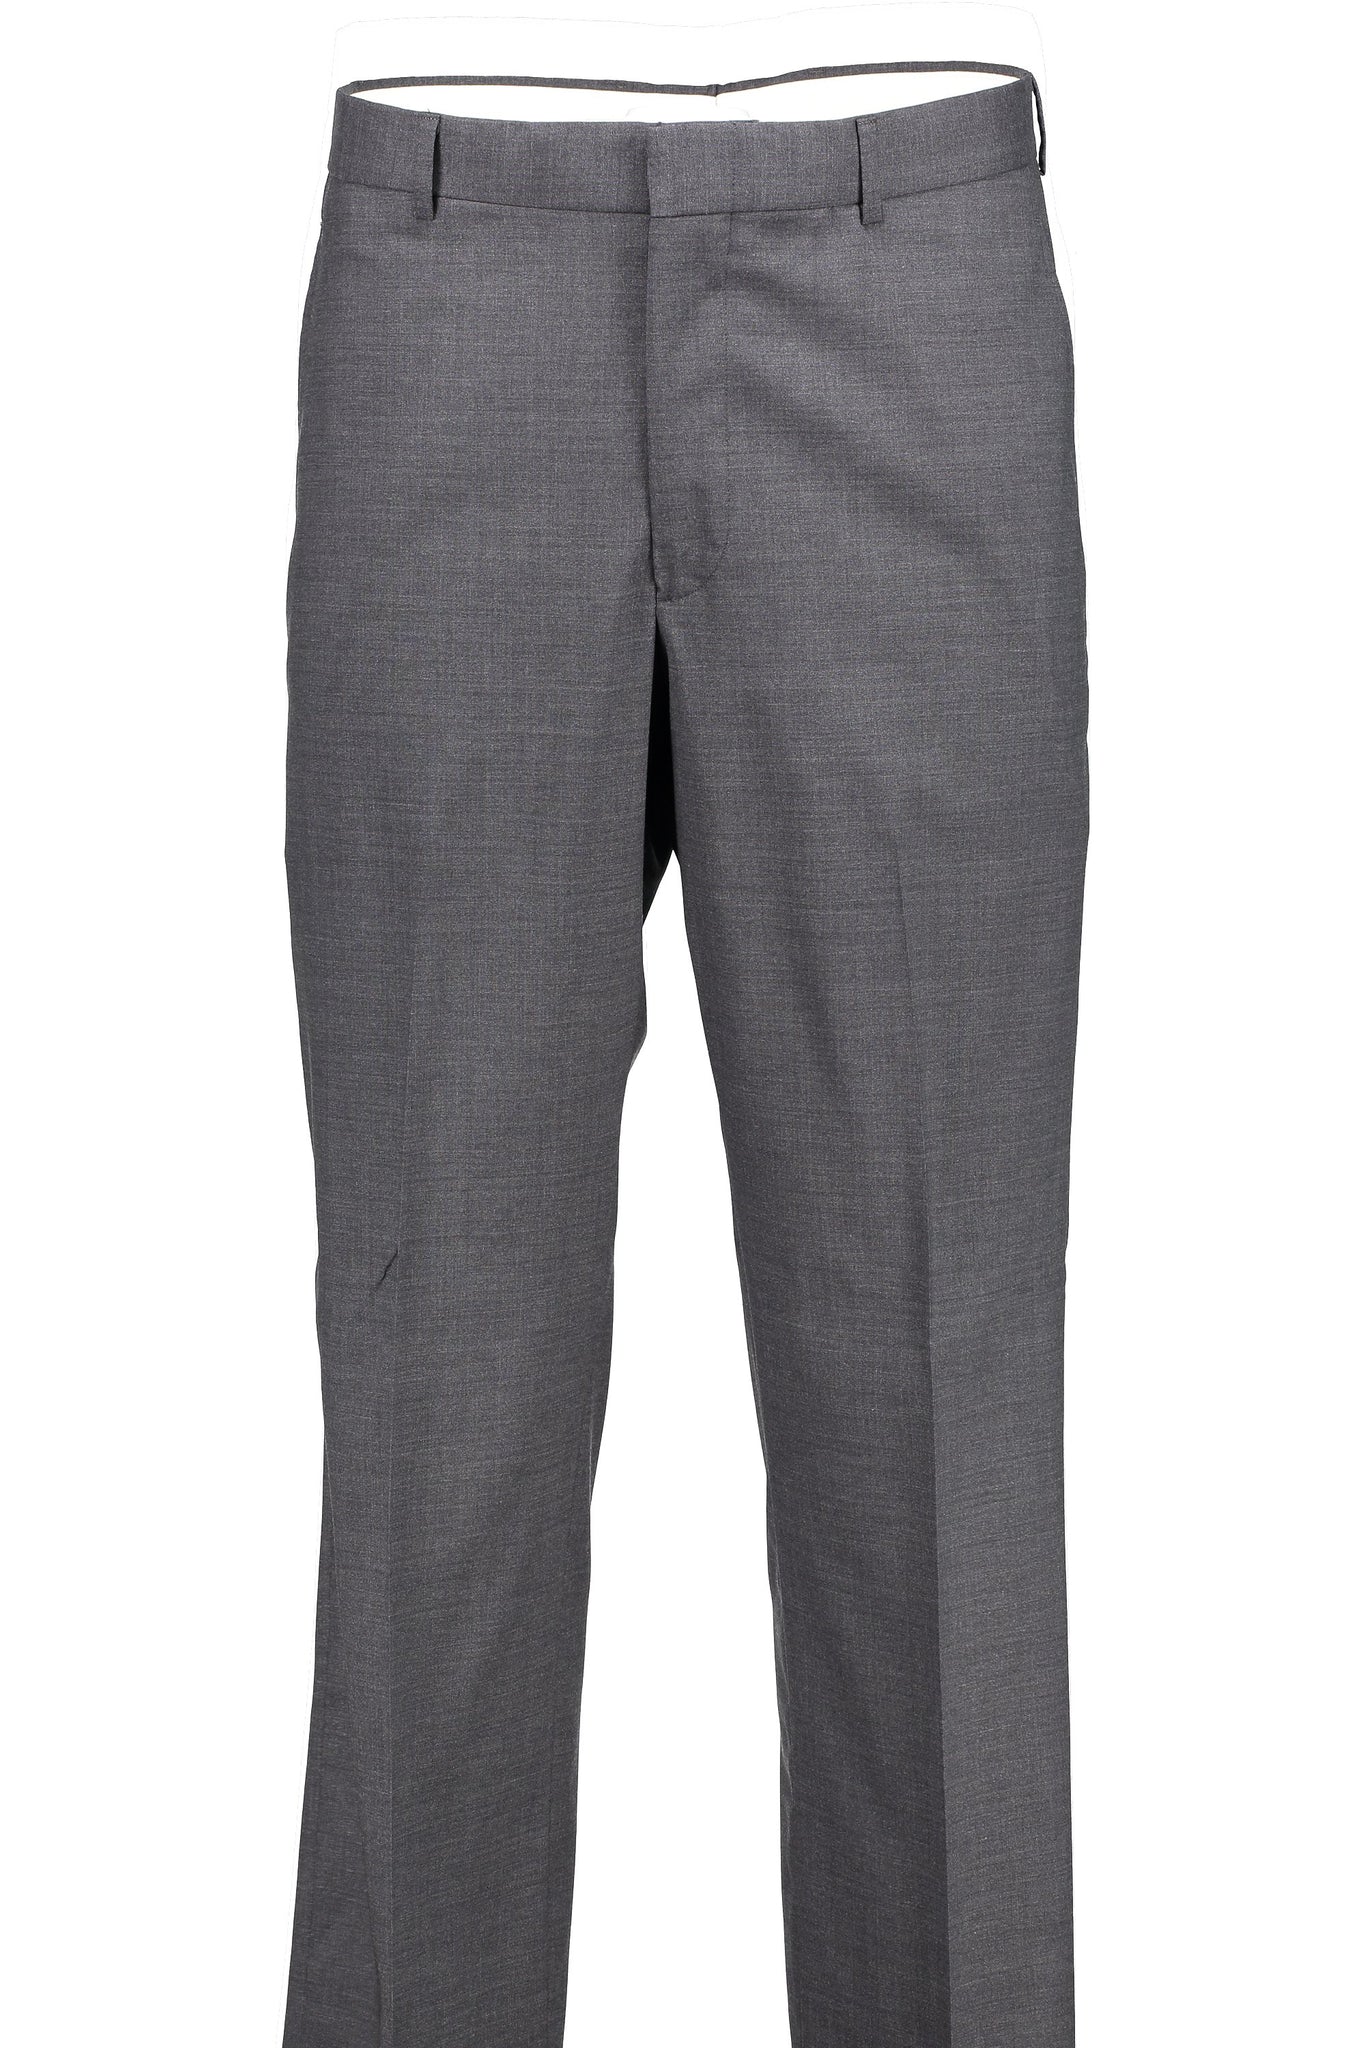 Hart Schaffner Marx Classic Fit Pleated Solid Dress Pants | Dillard's